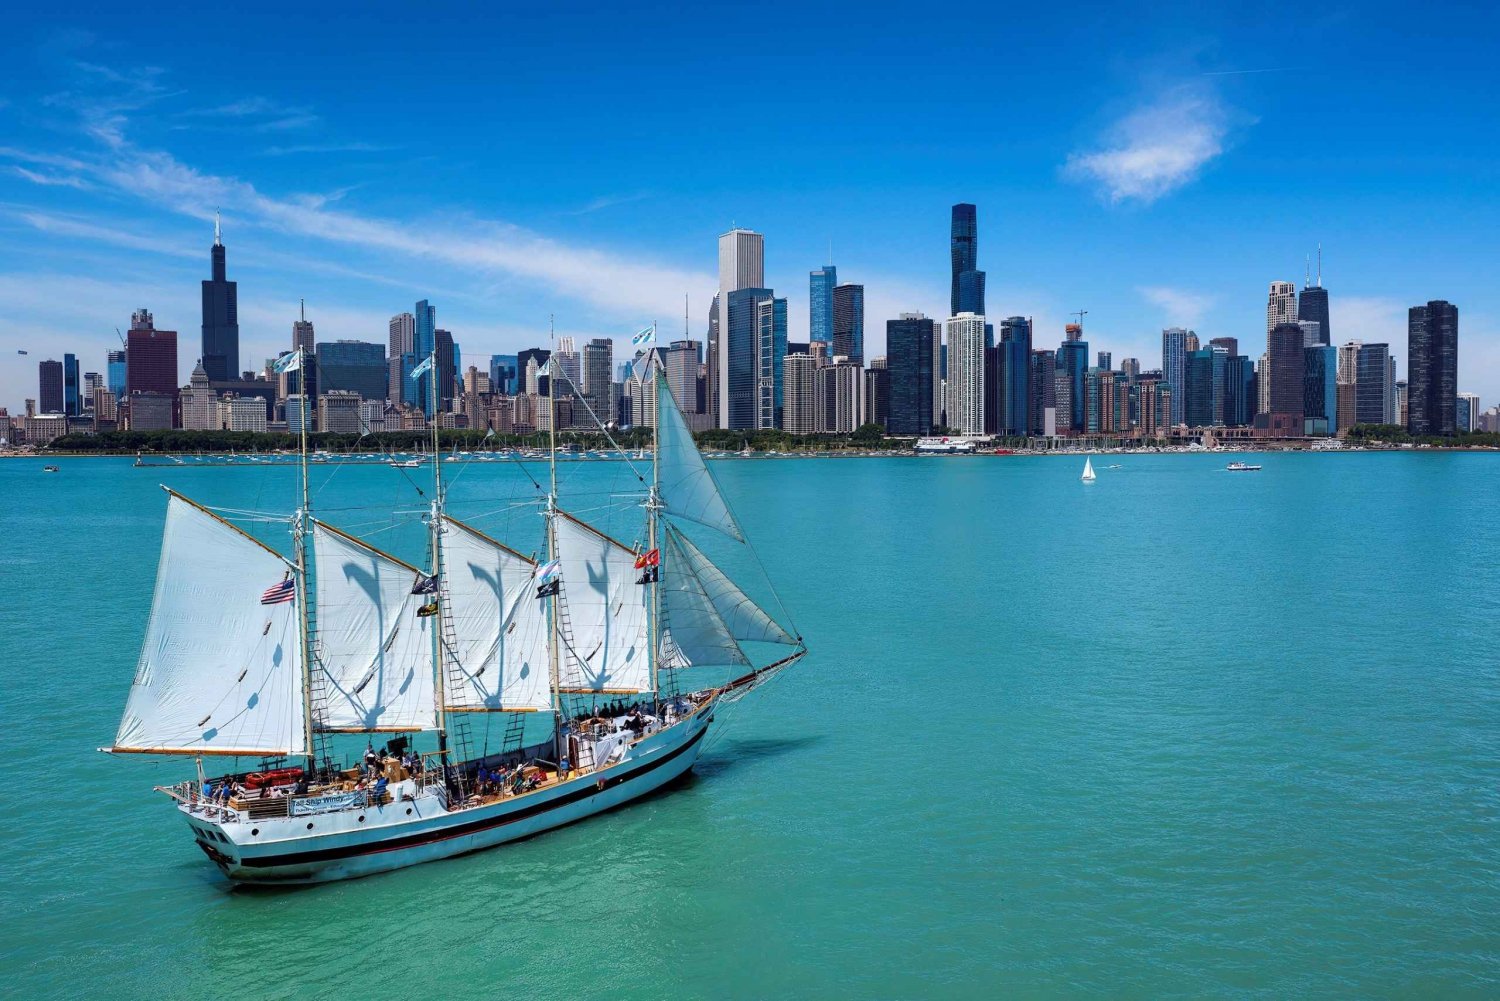 Chicago: Tall Ship Windy Architecture e tour in barca a vela sullo skyline